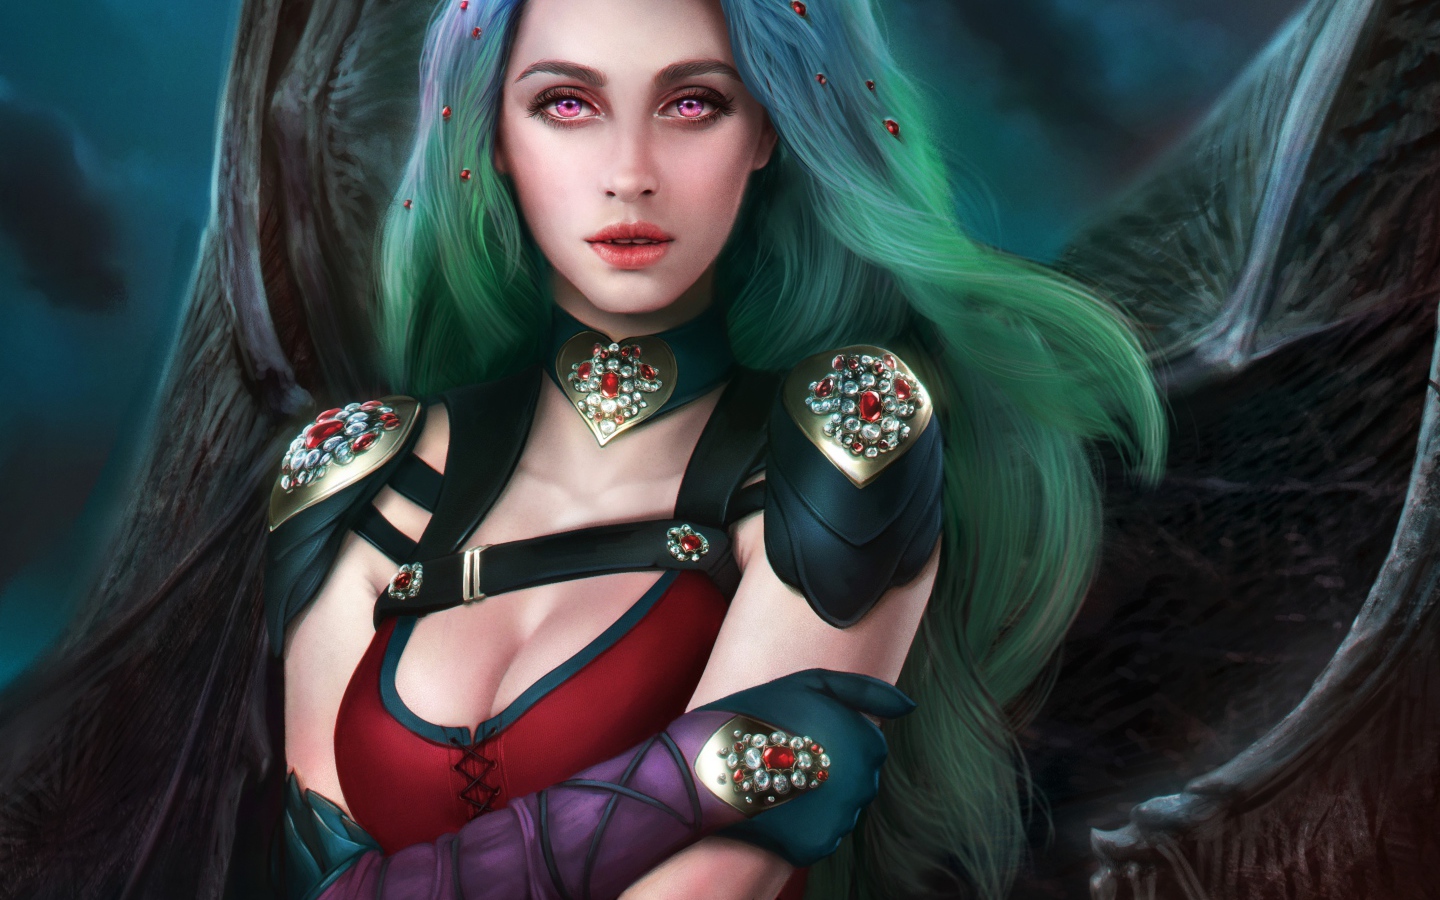 Фантастическая девушка с зелеными волосами королева вампиров